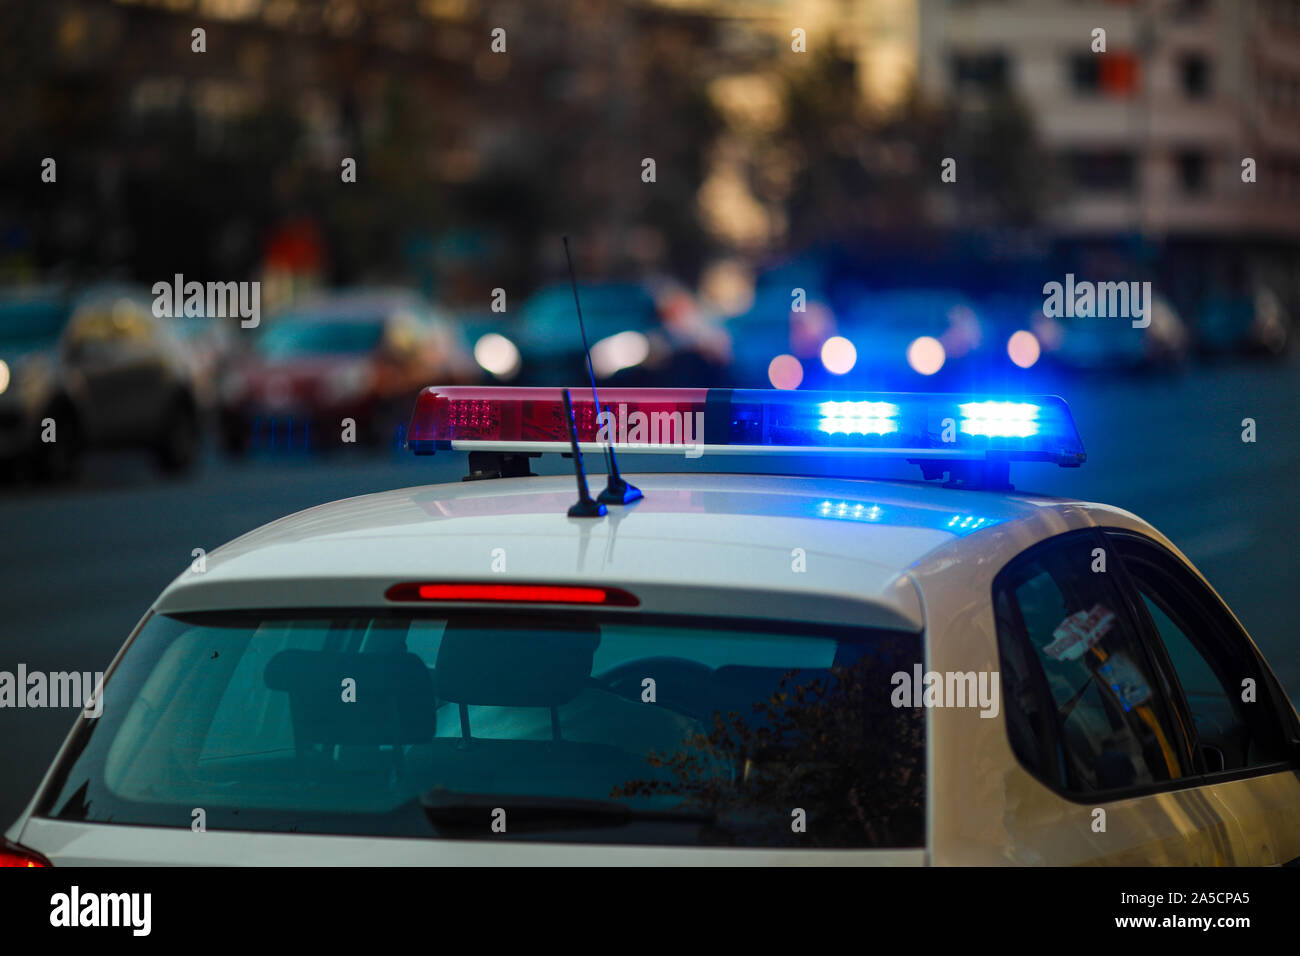 Blaulicht Sirene Eines Italienischen Polizeiauto In Der Großstadt In  Aufruhr Lizenzfreie Fotos, Bilder und Stock Fotografie. Image 50757541.